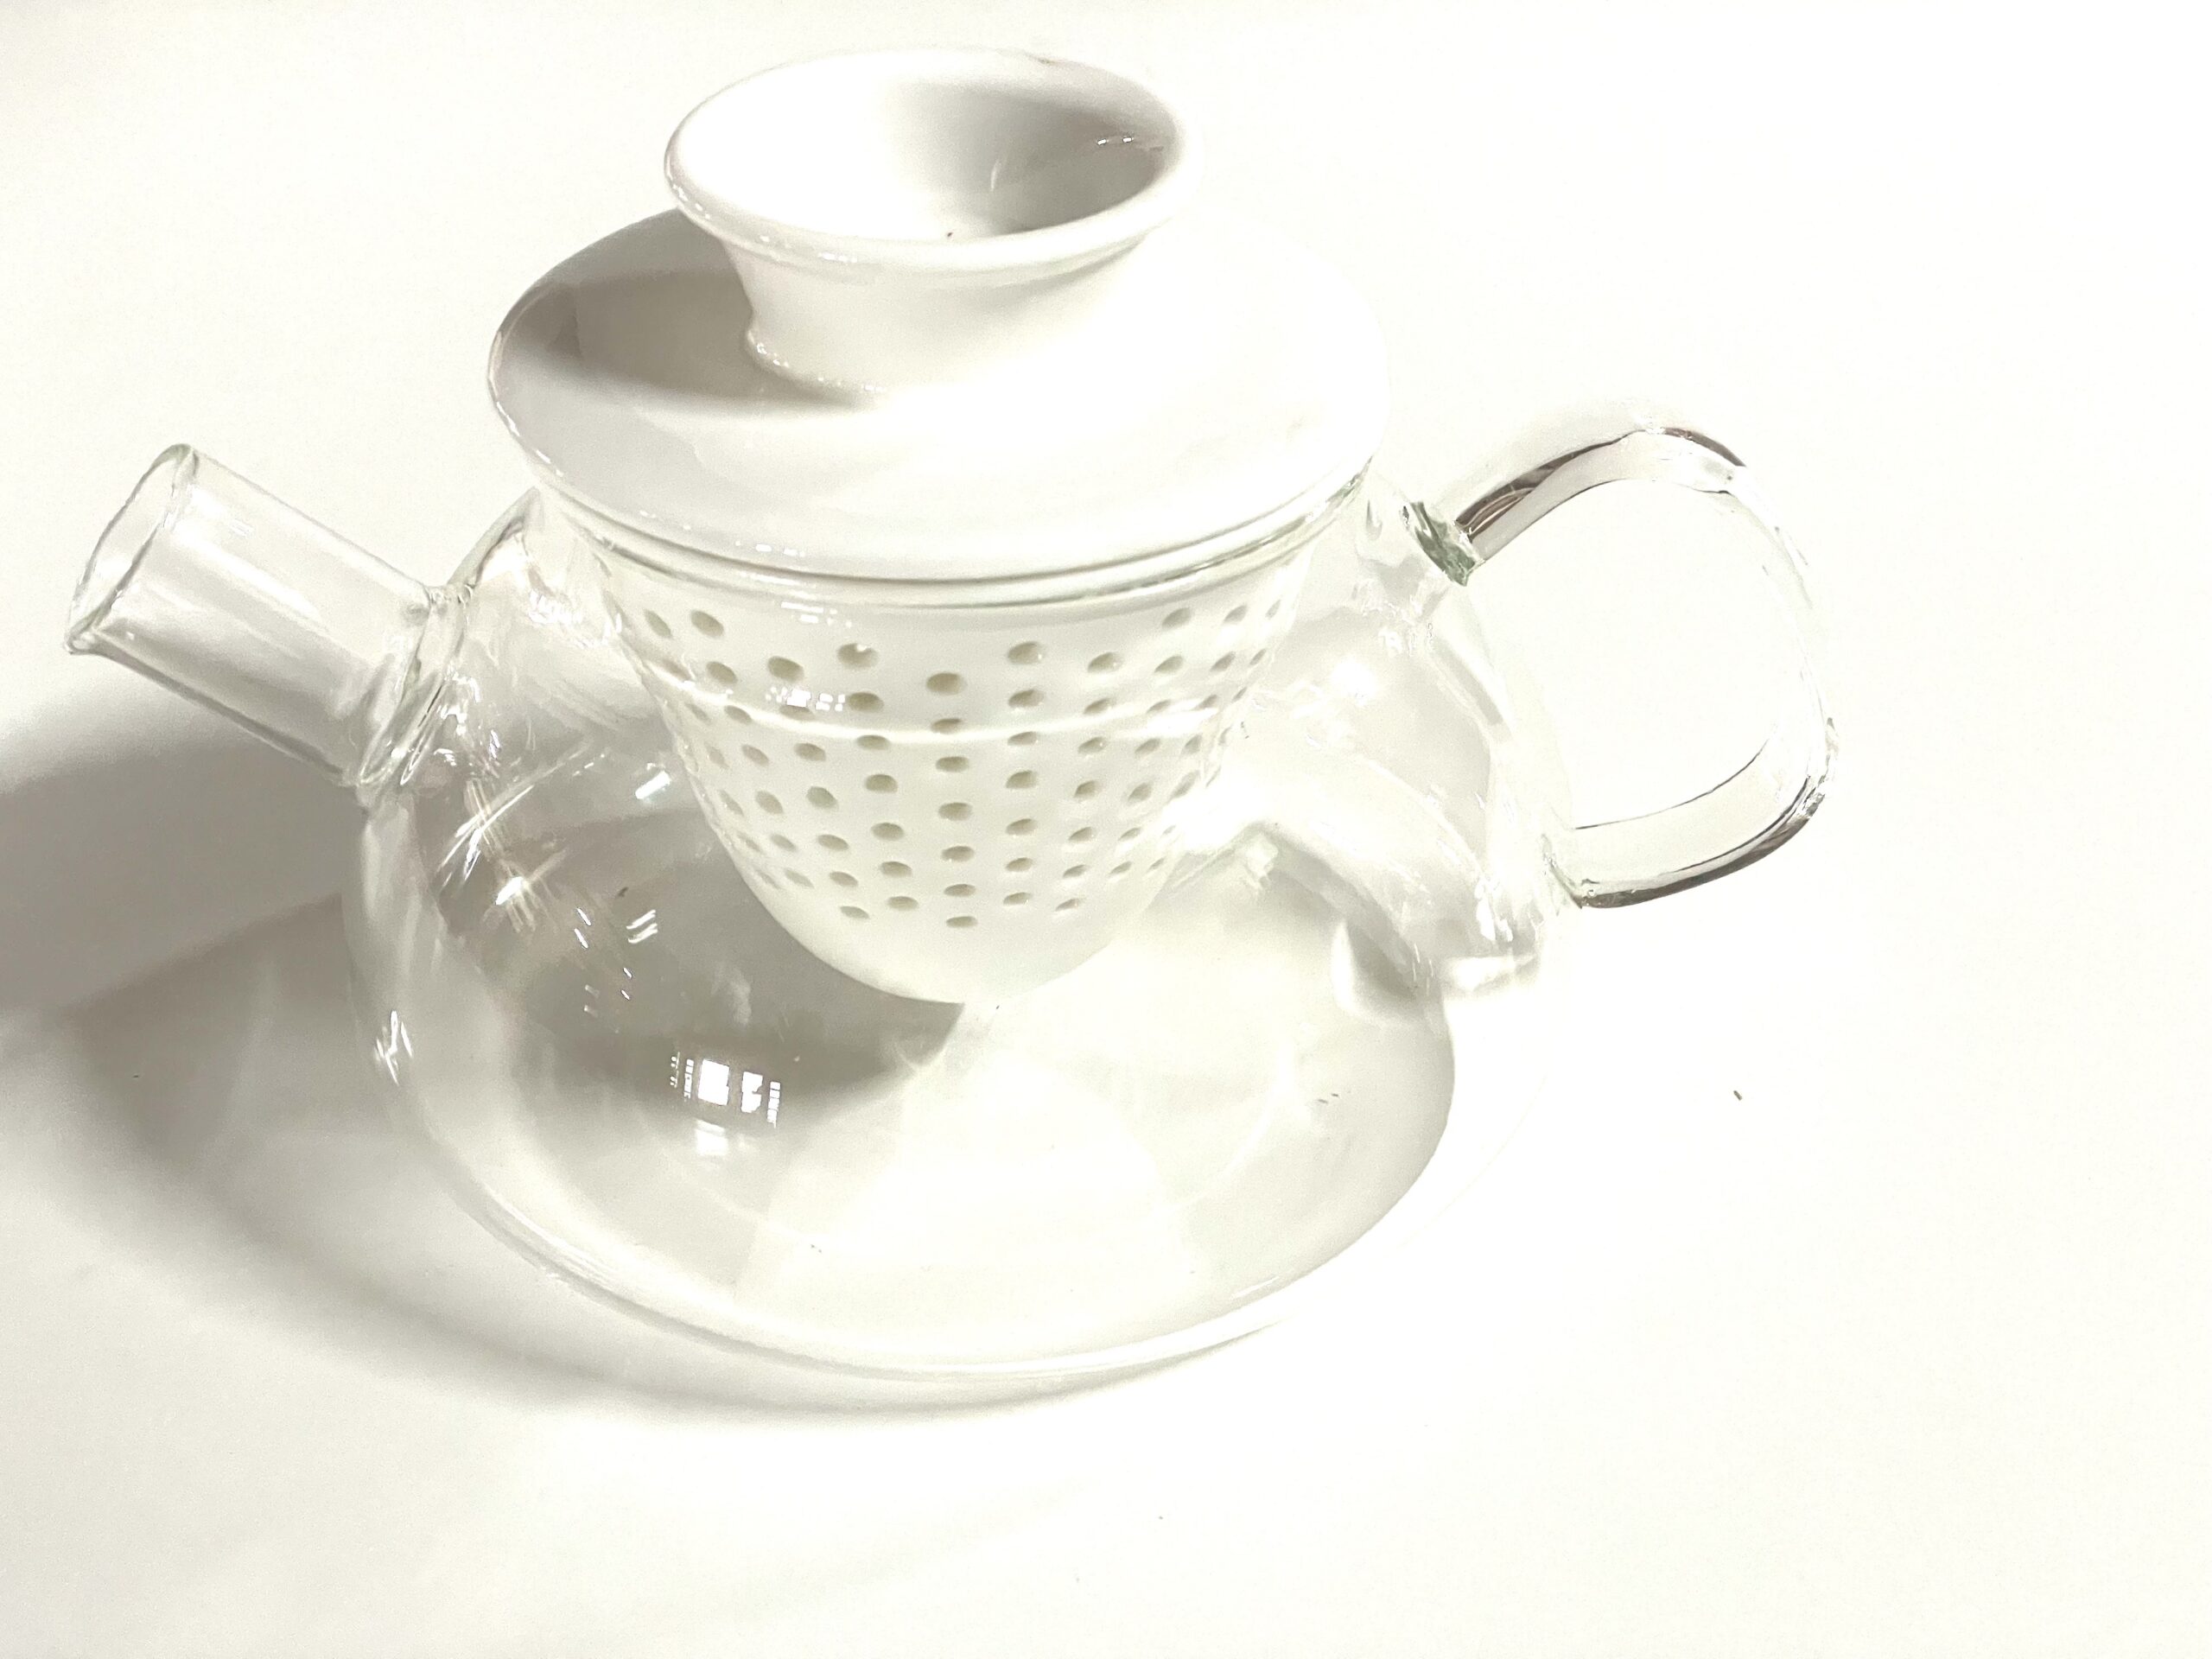 Tetera cristal con filtro porcelana blanco, 0,5 l - MAYORISTAS DE TÉ, DISTRIBUIDORES DE TÉ